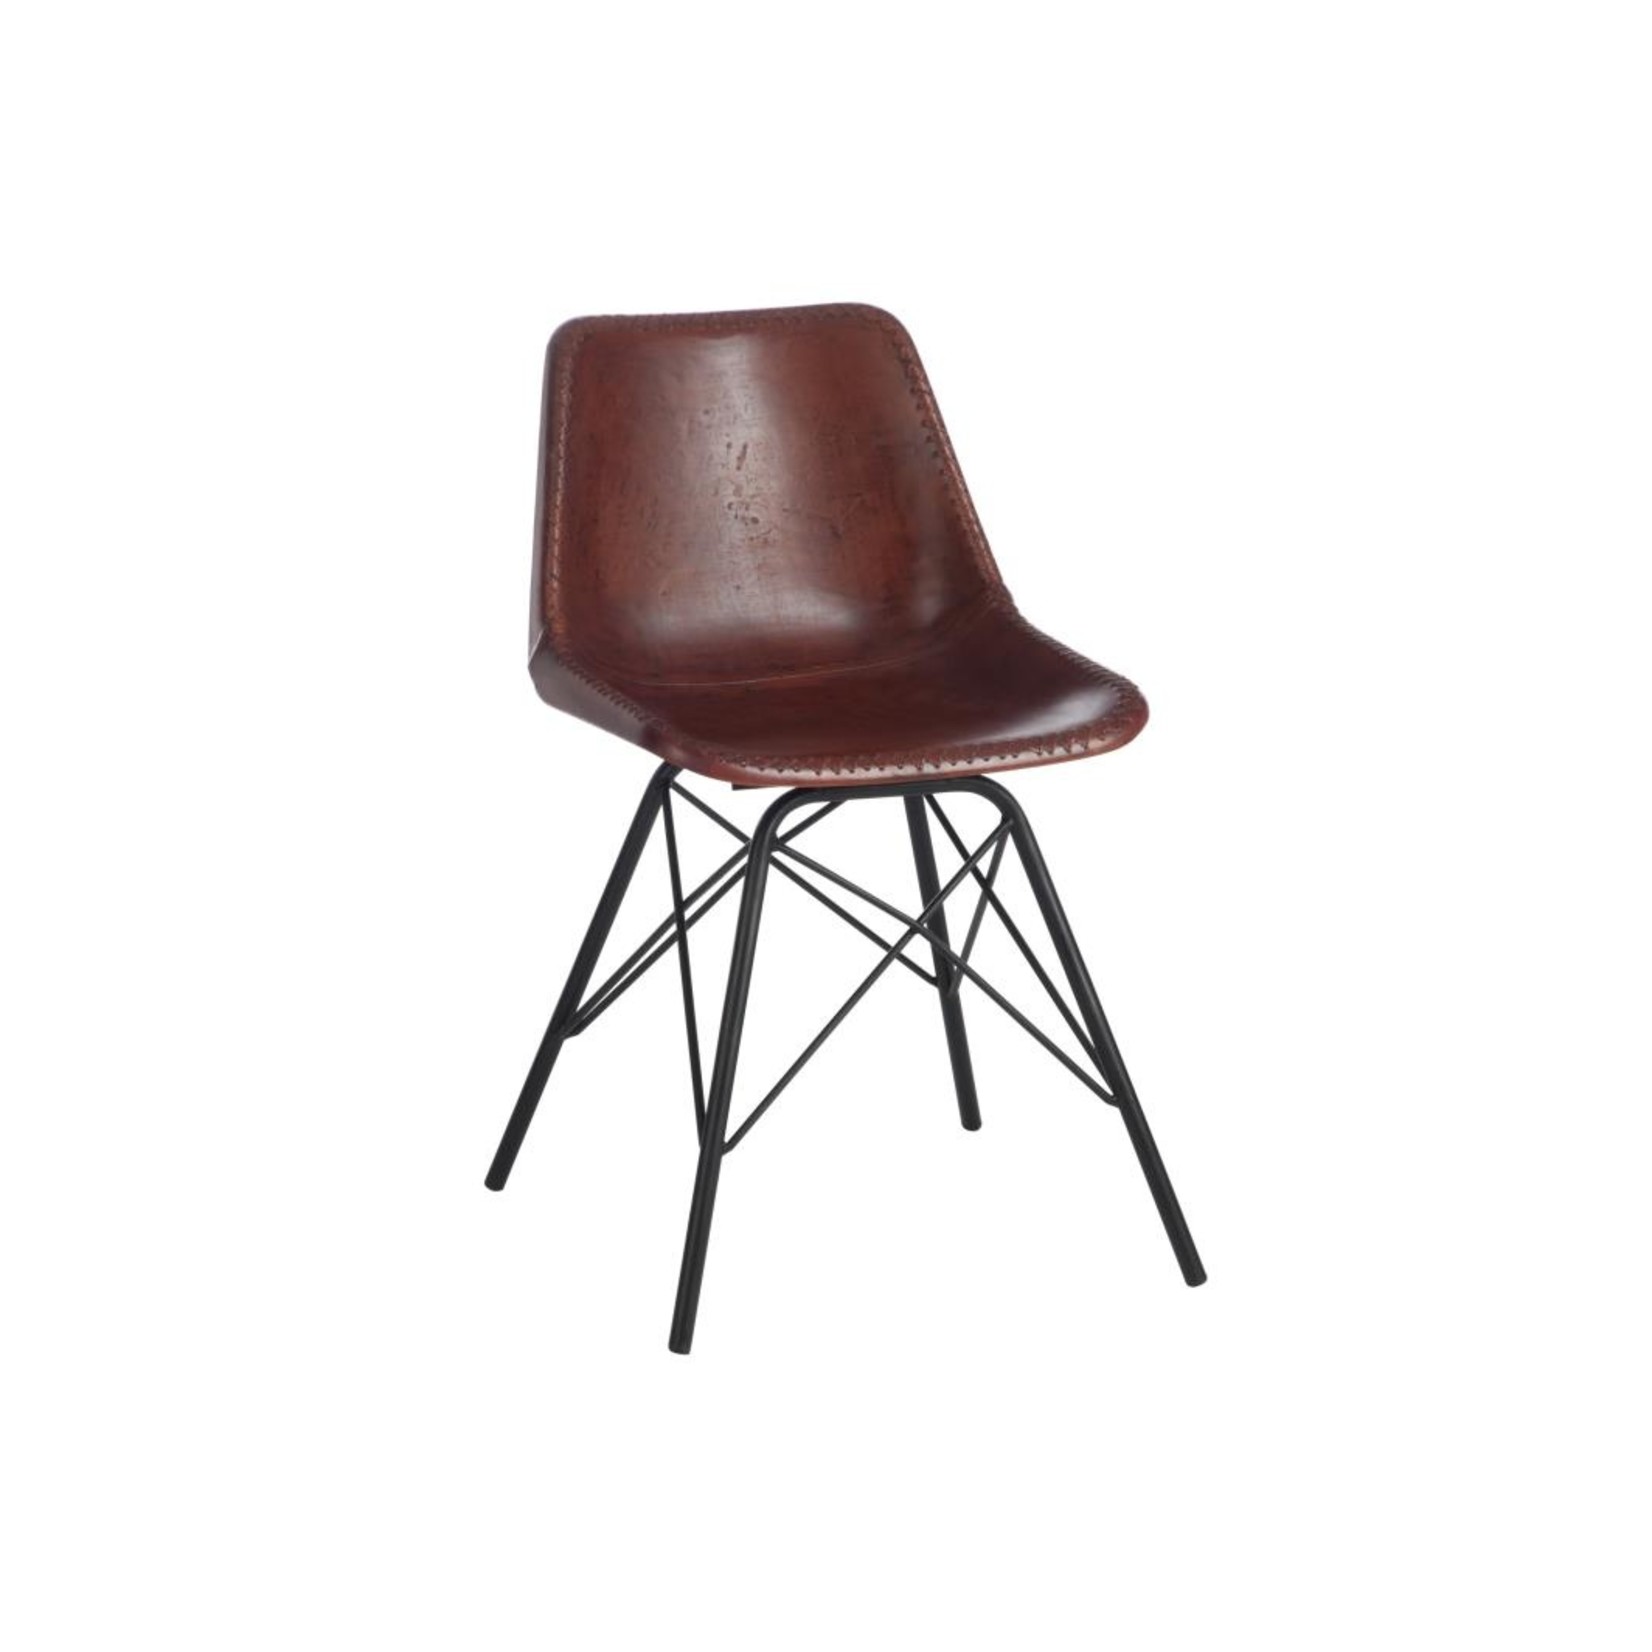 J-Line Chair Loft Rustic Legs Metal Leather Brown - Black